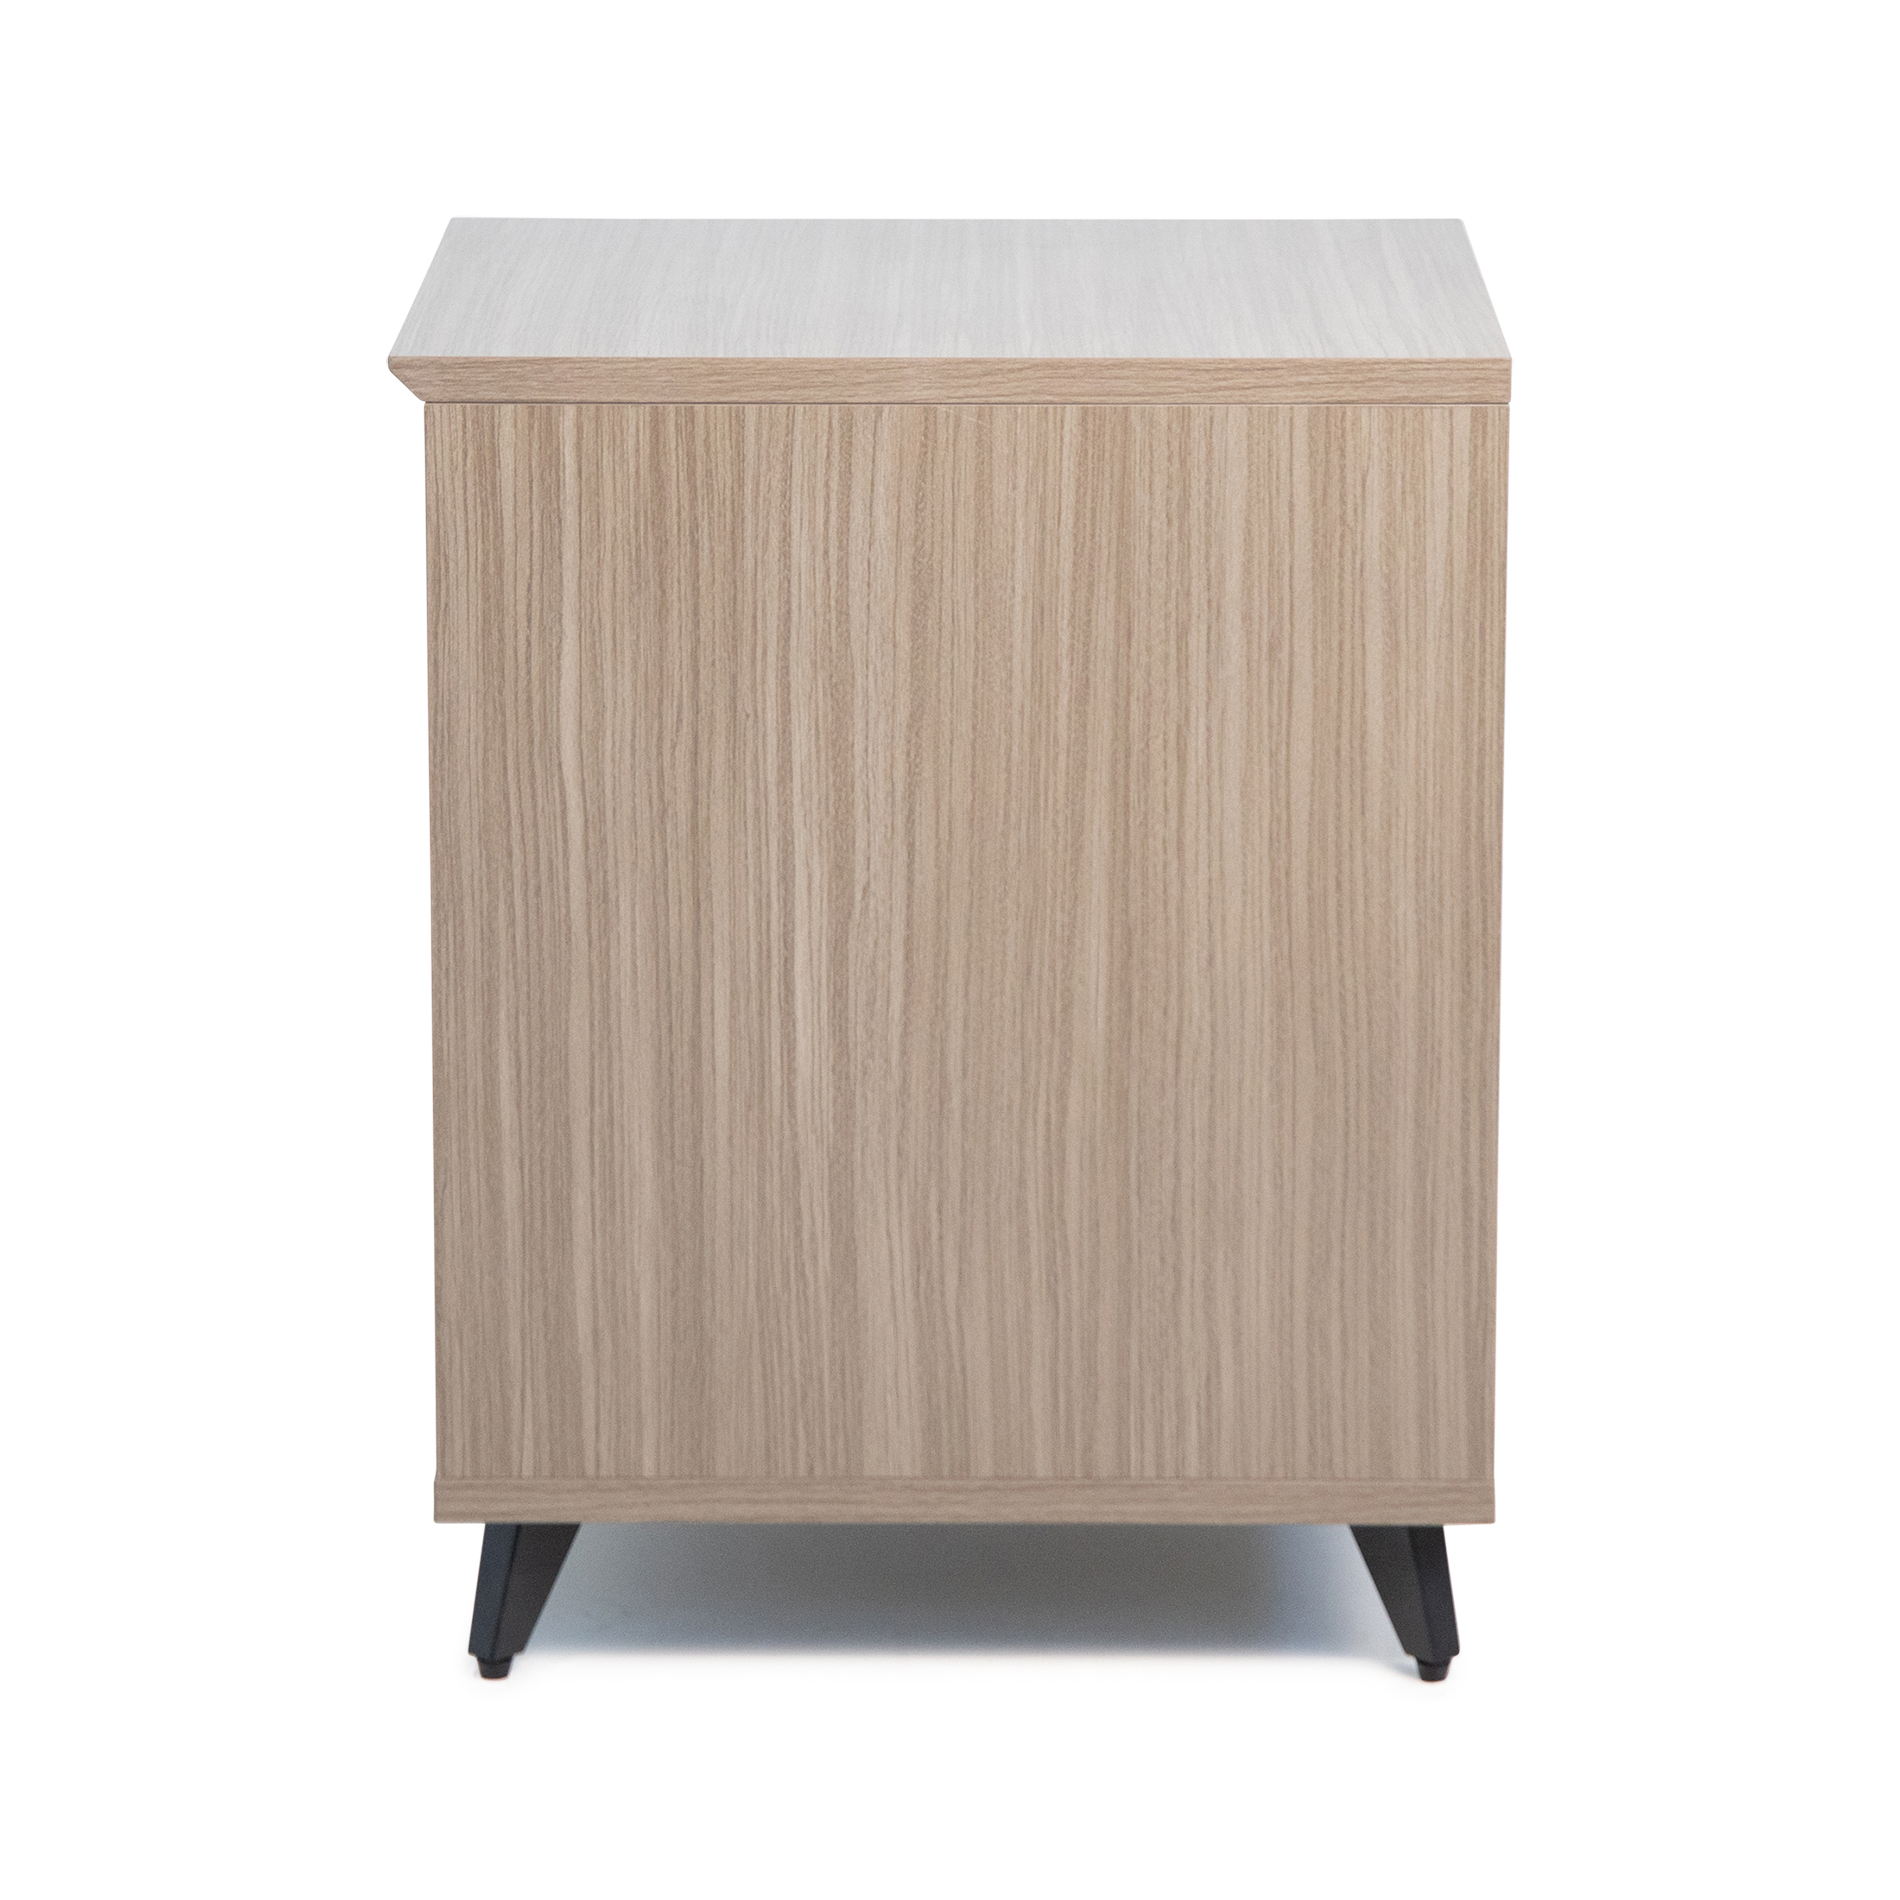 Elite Series Furniture Desk 10U Rack – GRY-GFW-ELITEDESKRK-GRY